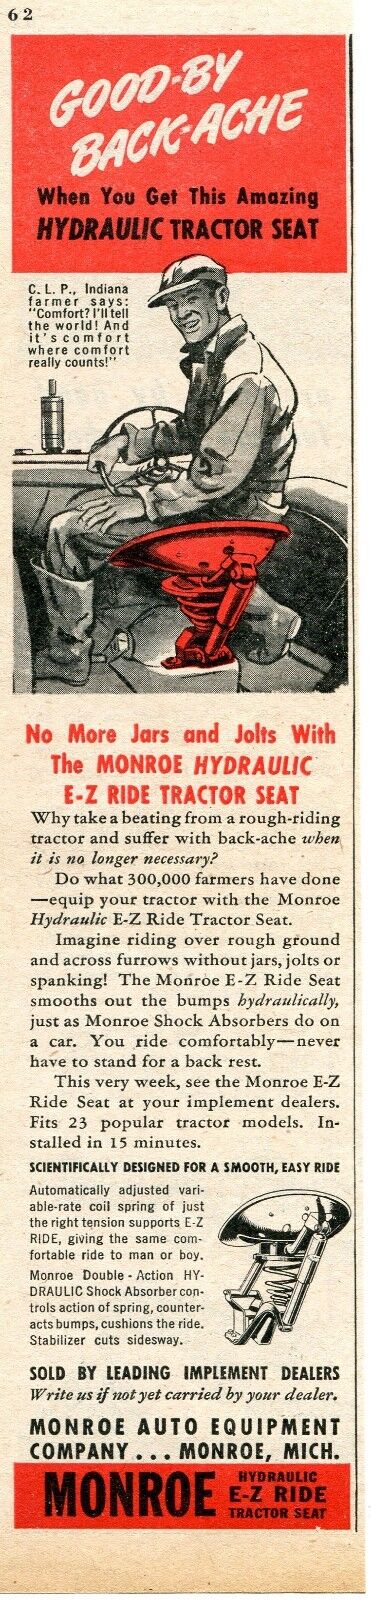 1947 Print Ad of Monroe Auto Equipment Hydraulic E-Z Ride Tractor Seat